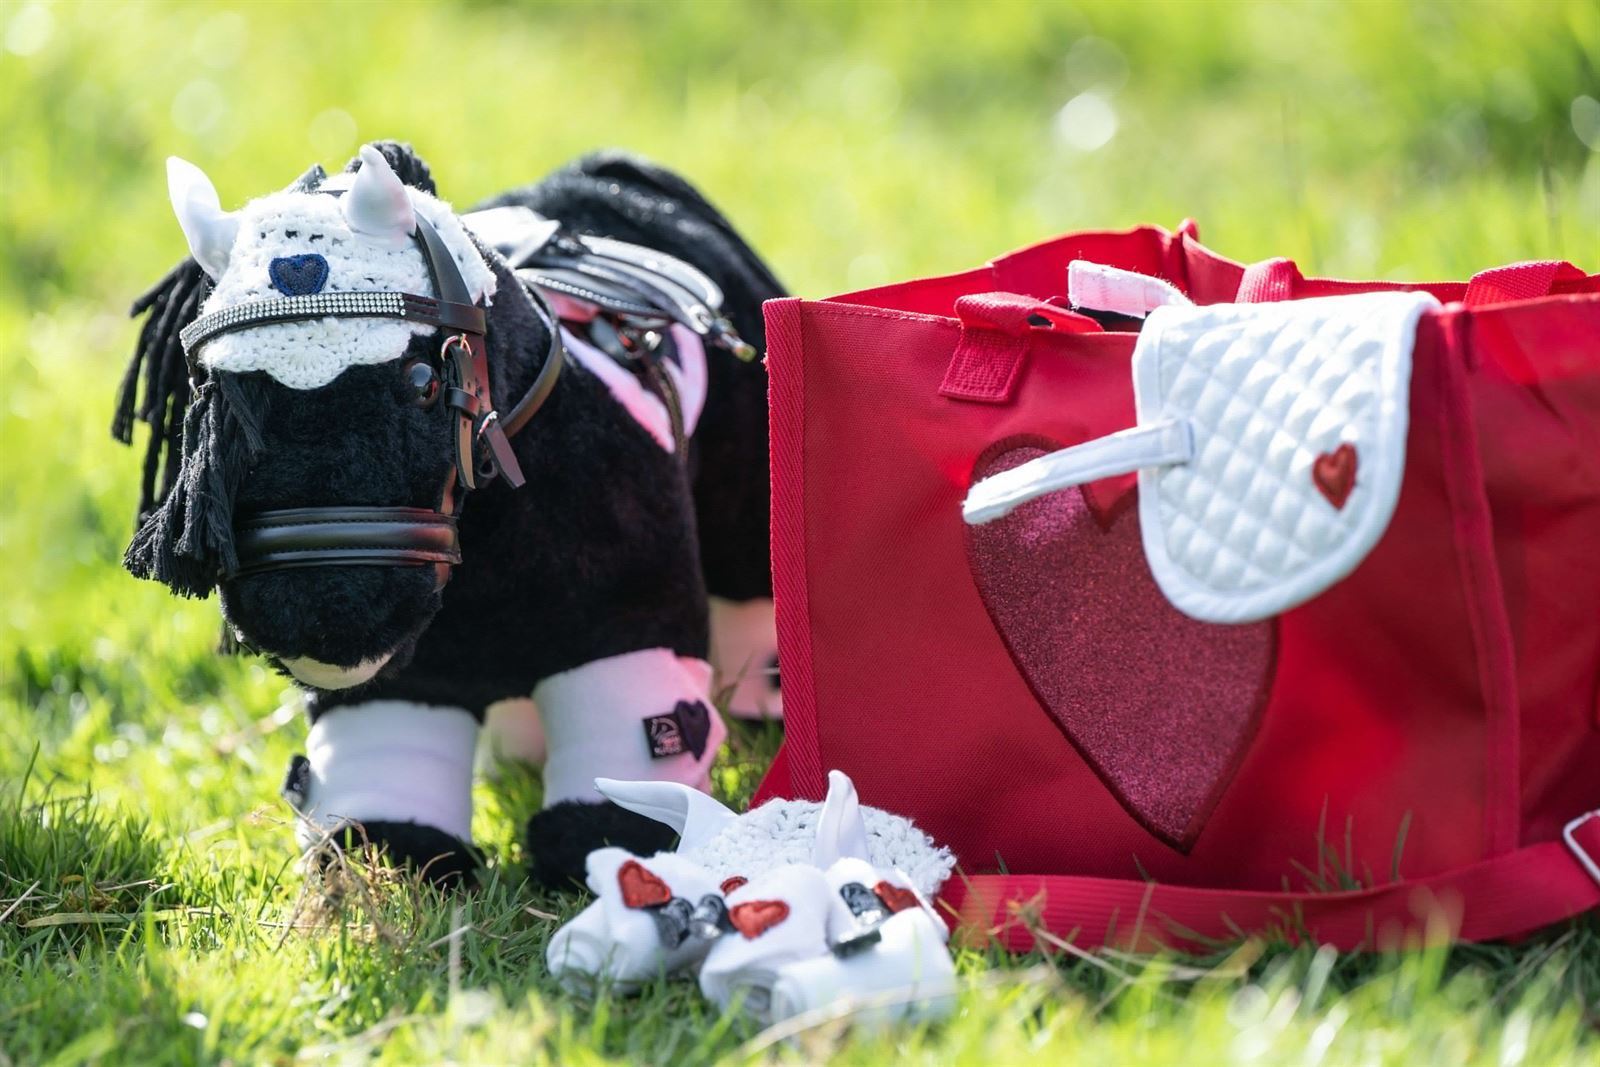 Set accesorios Cuddle pony HKM Sports Equipment Mantilla, orejeras y vendas , color blanco/rosa fucsia - Imagen 4